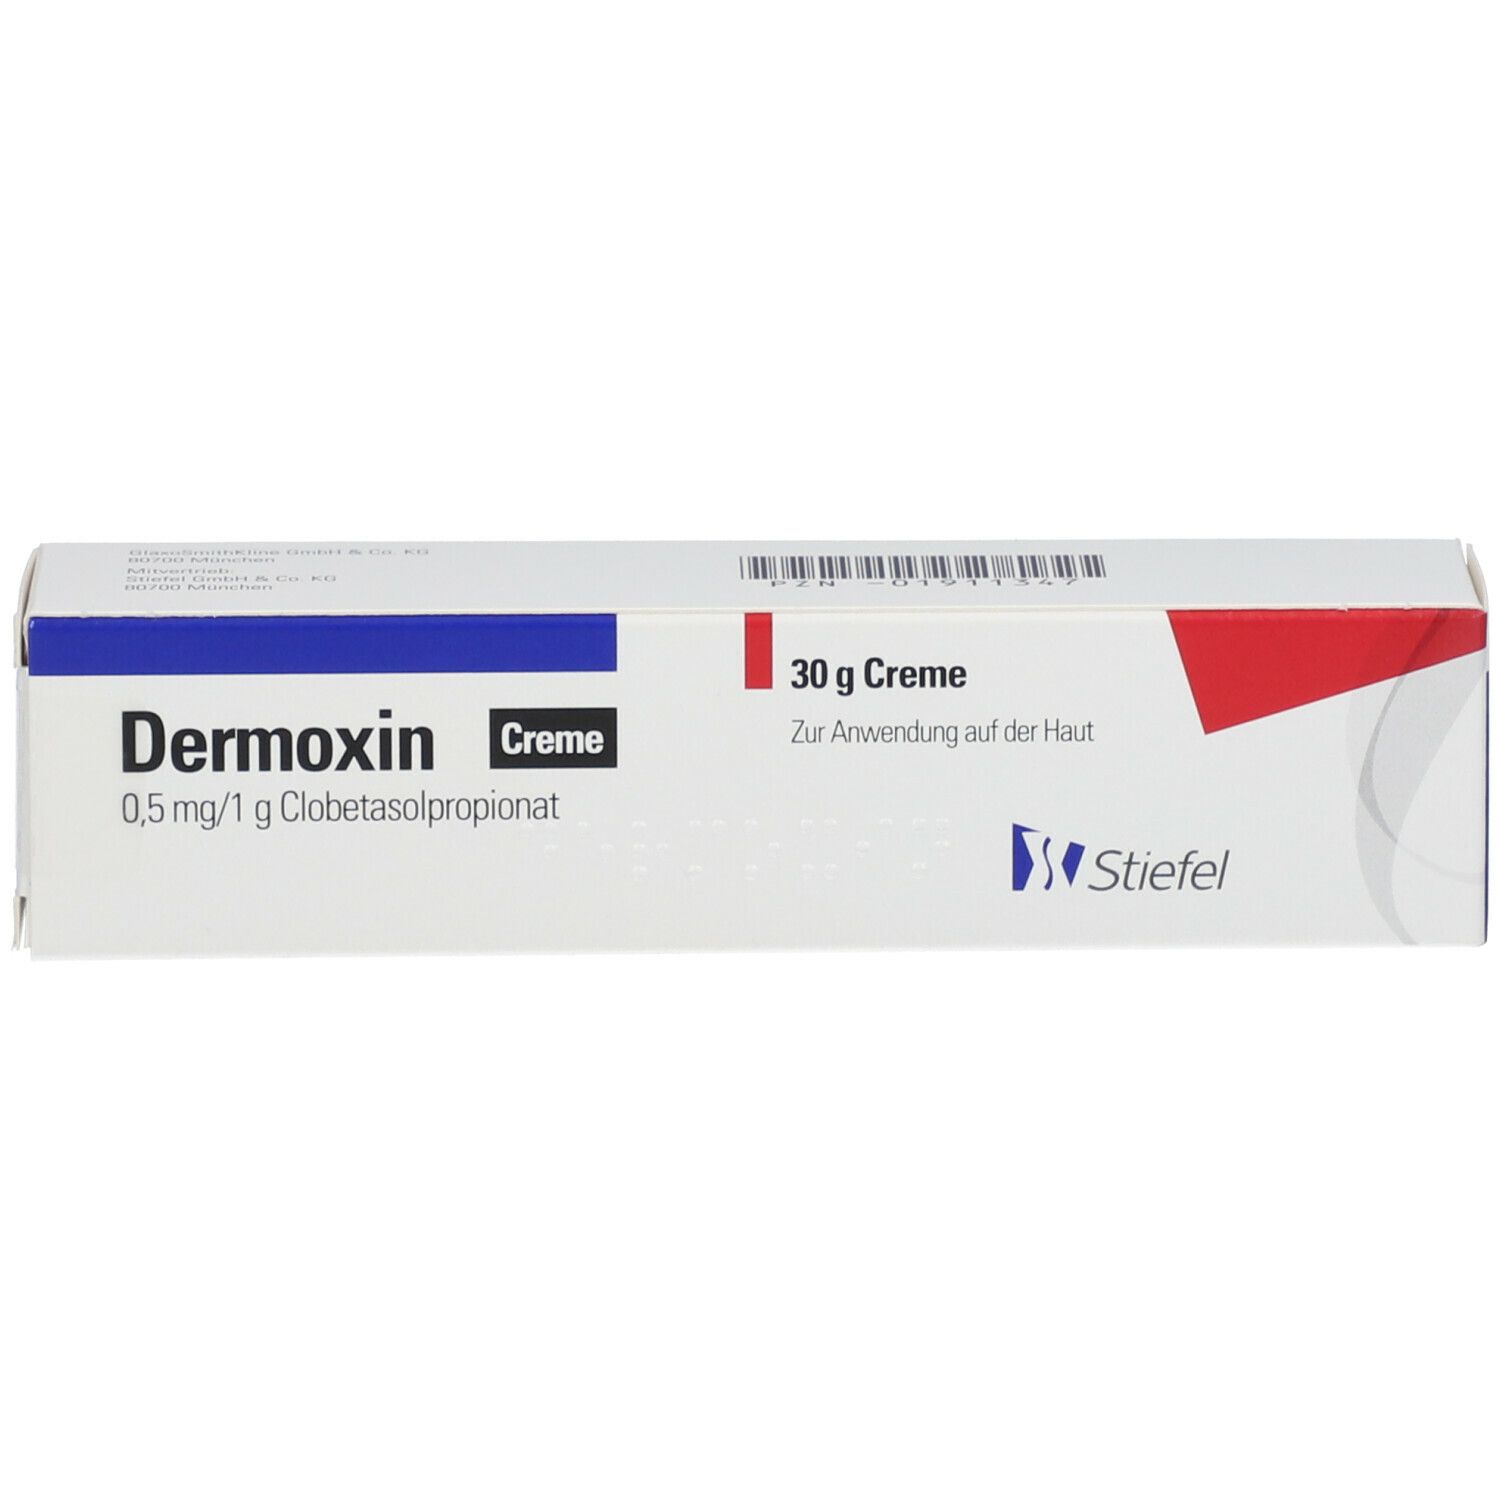 Dermoxin Creme 0,5 mg/1 g